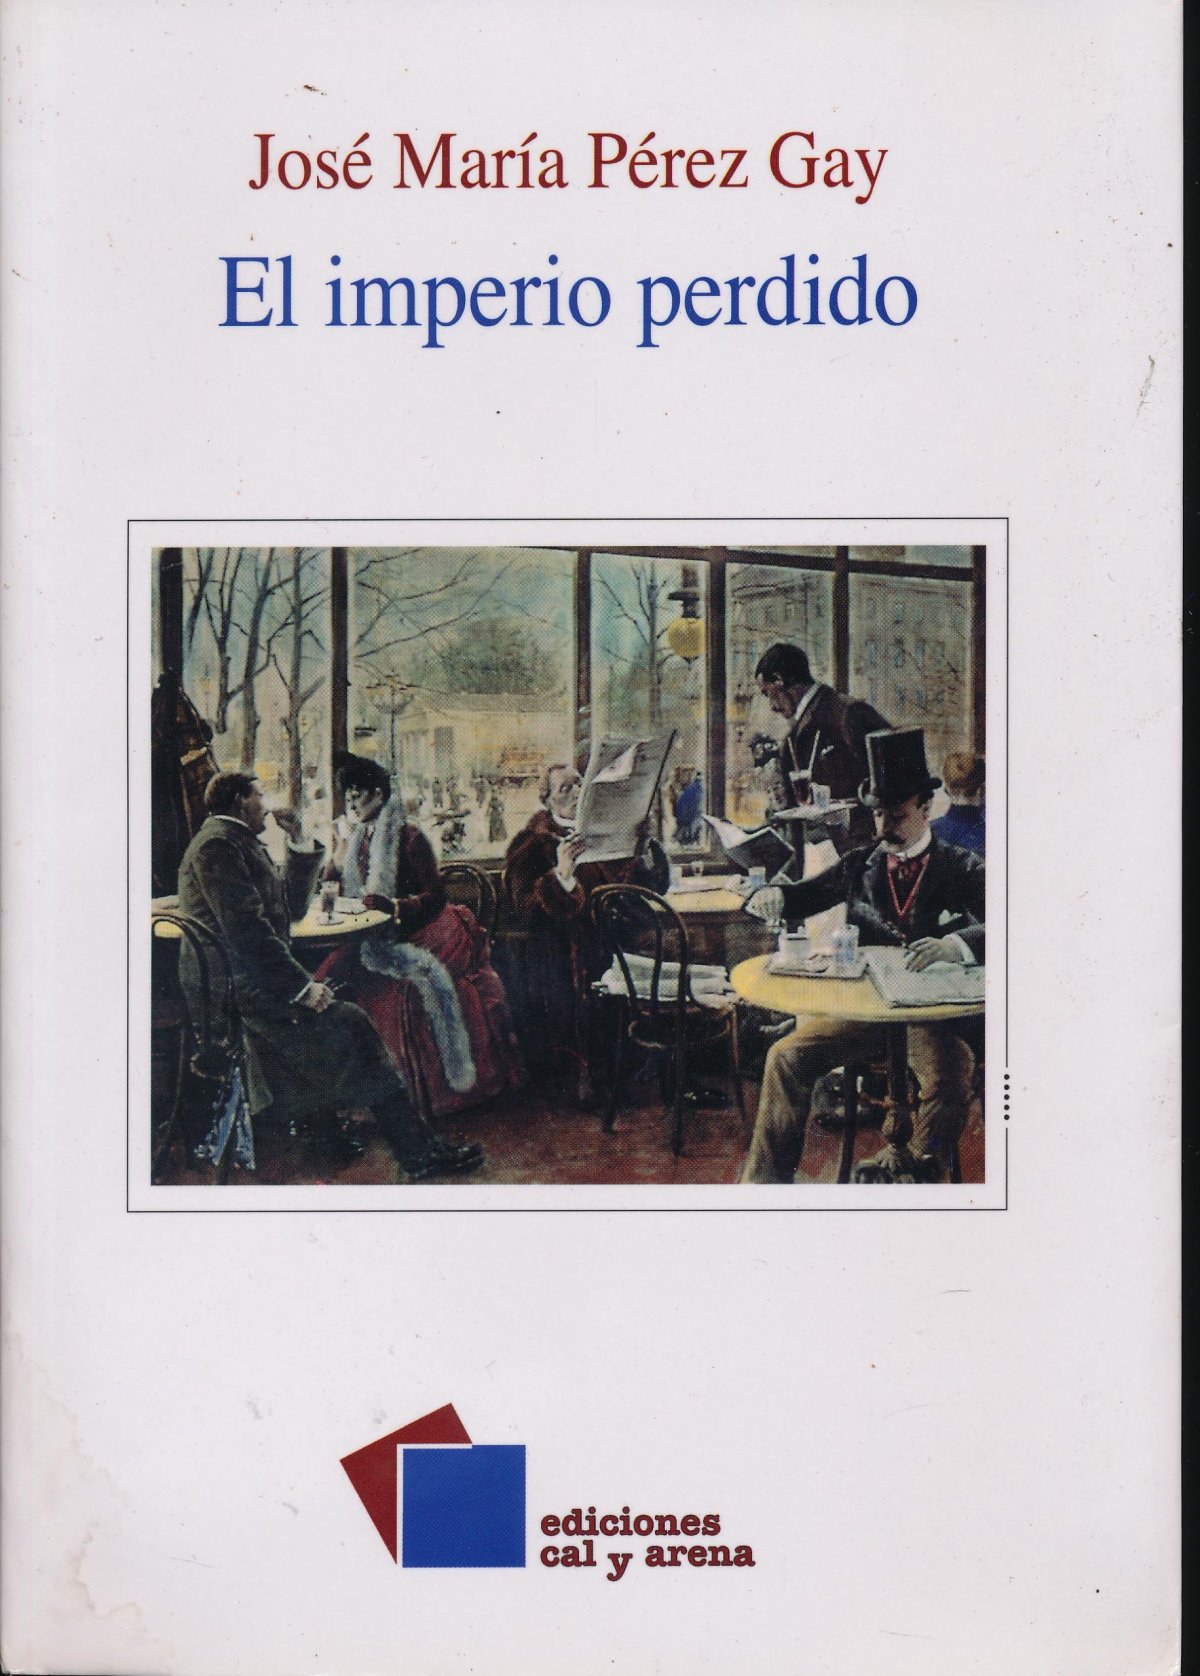 El libro nuestro de cada martes: El Imperio perdido de José María Pérez Gay